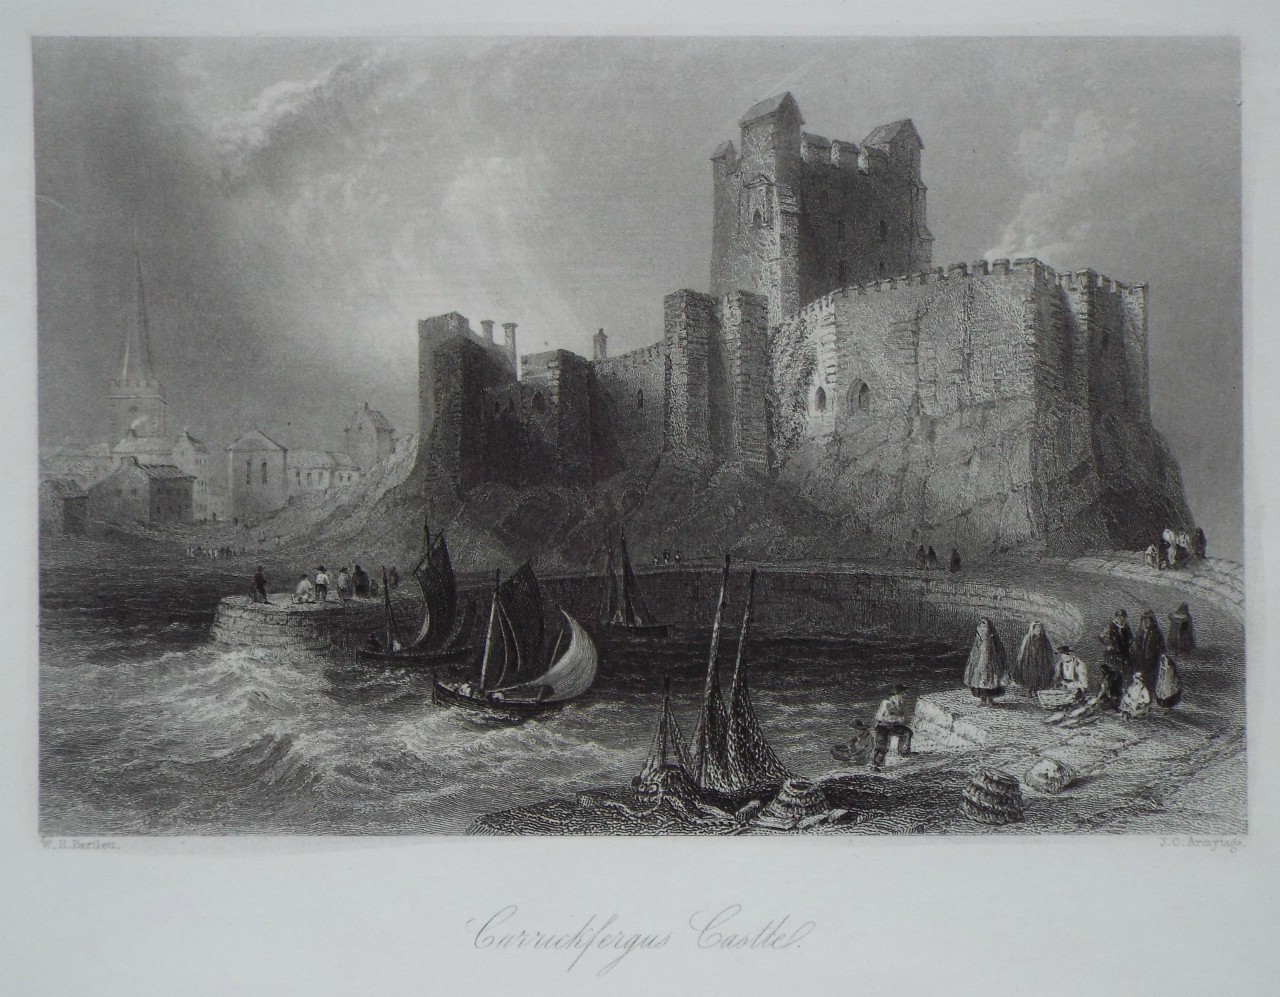 Print - Carrickfergus Castle. - Armytage